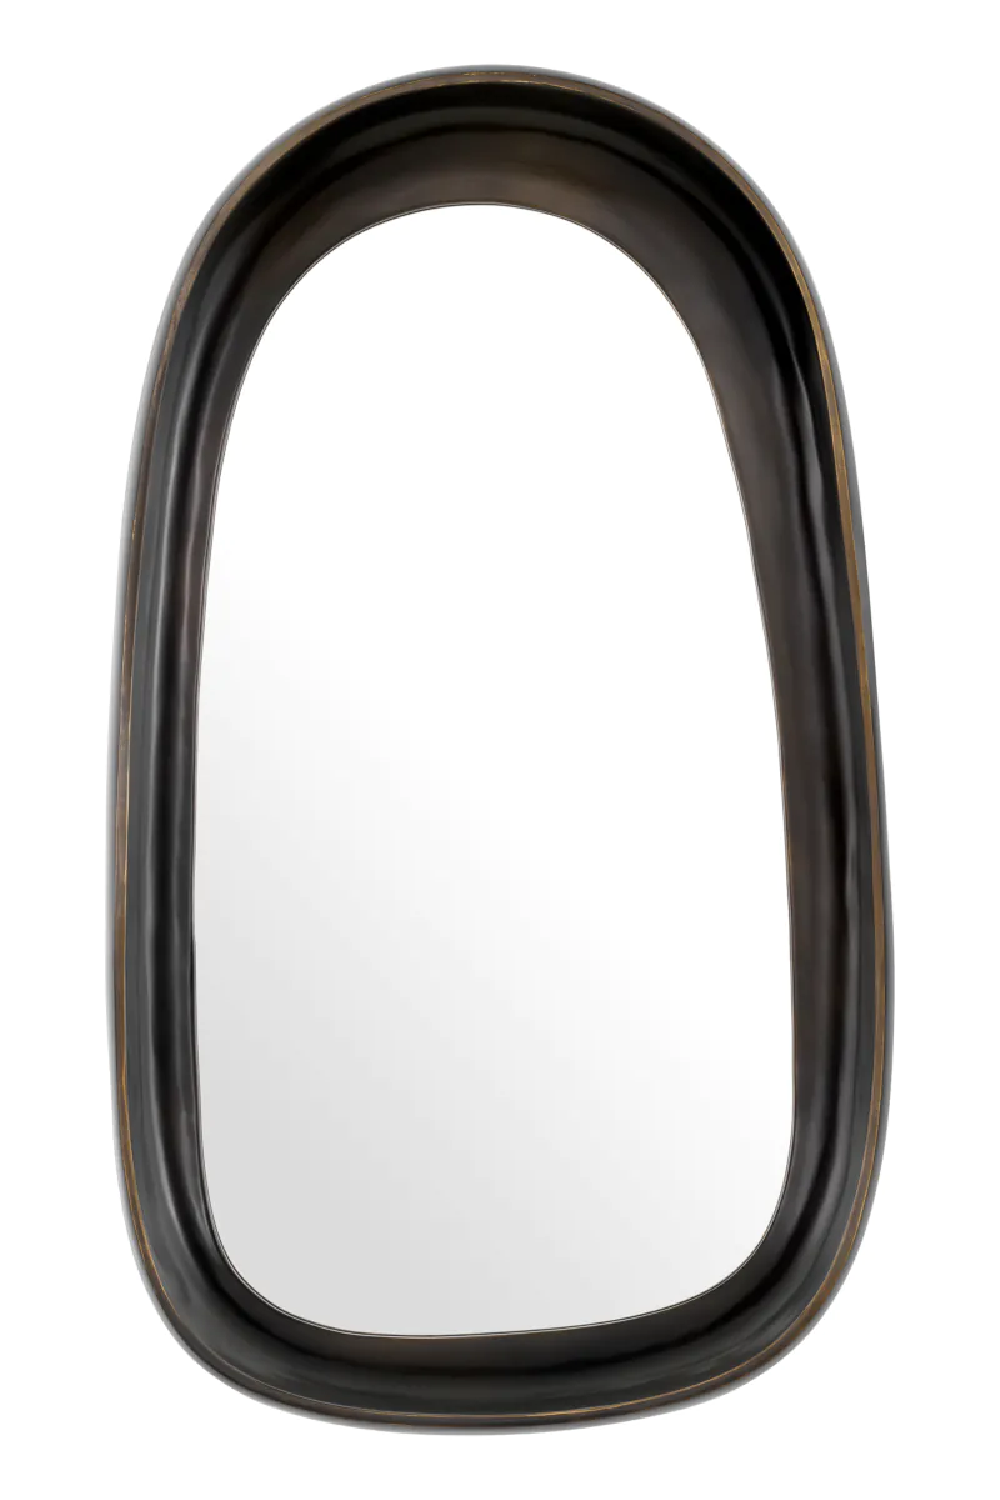 Free-Form Vintage Mirror L | Eichholtz Sandals | Oroa.com